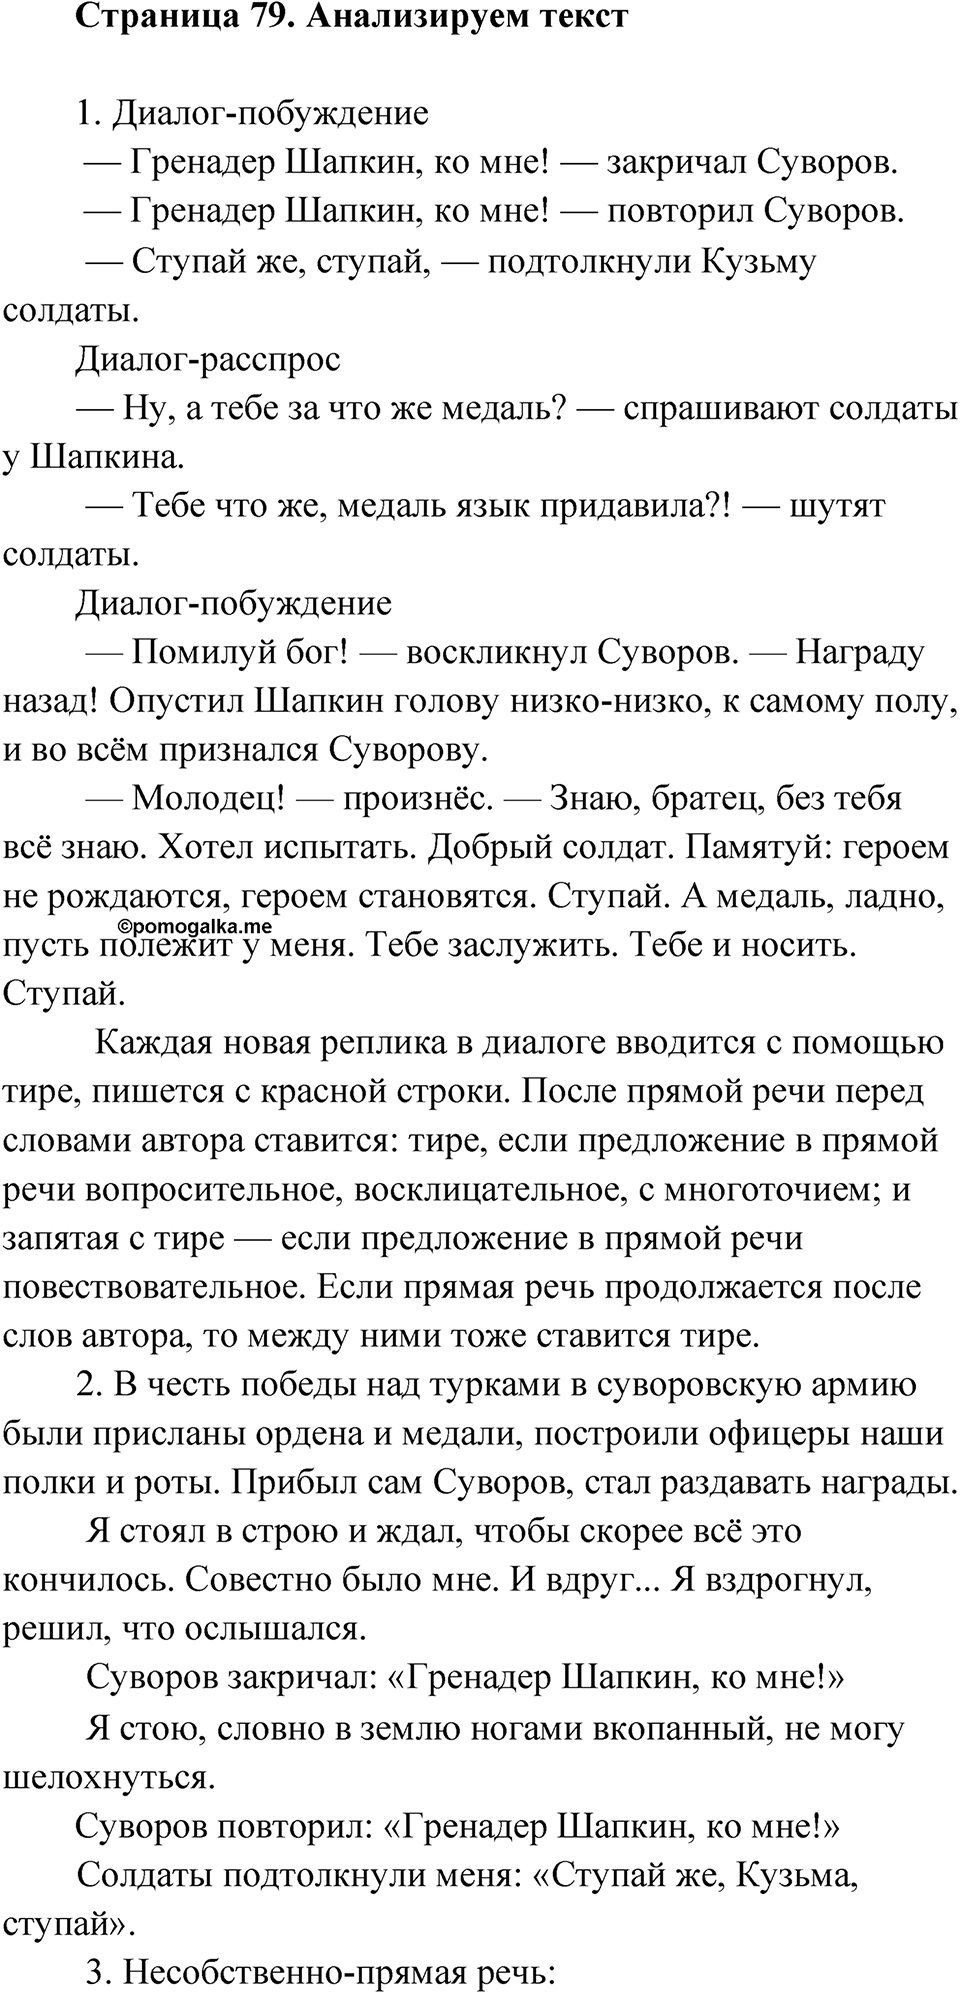 страница 79 Анализируем текст русский язык 9 класс Быстрова 2 часть 2022 год